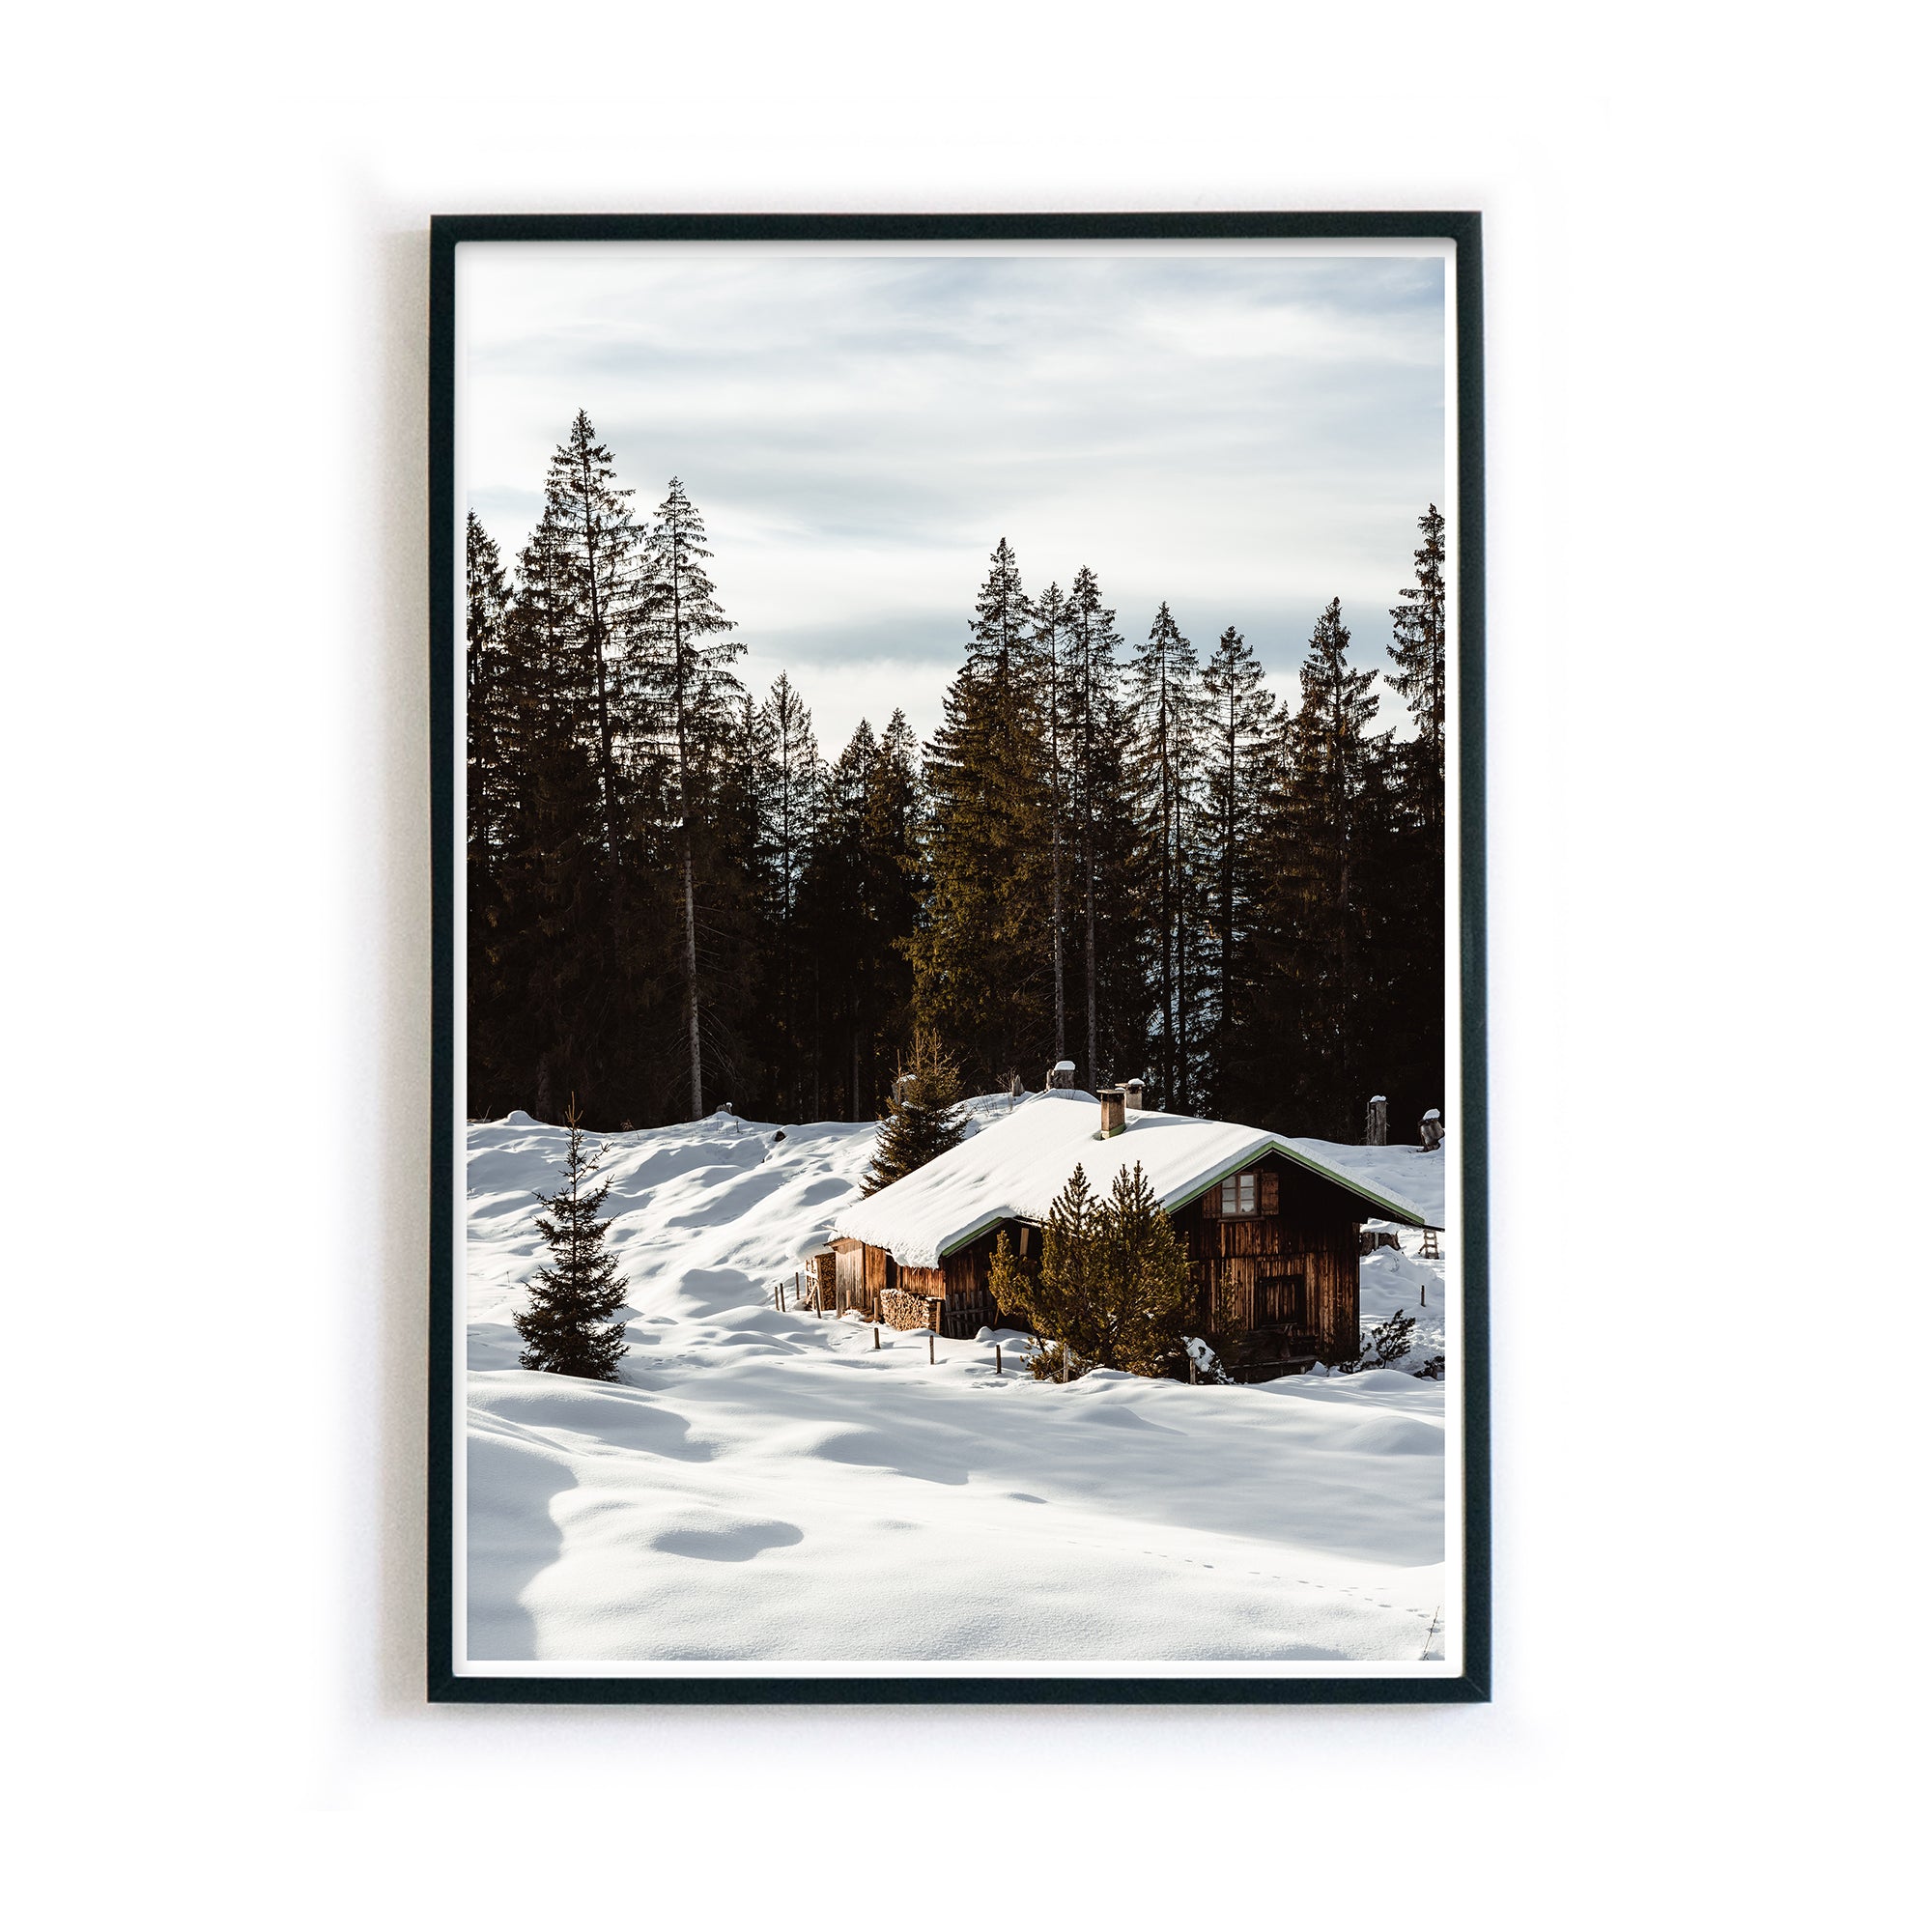 4one-pictures-natur-poster-winter-bild-berg-waelder-wald-schnee-eis-bilderrahmen.jpg